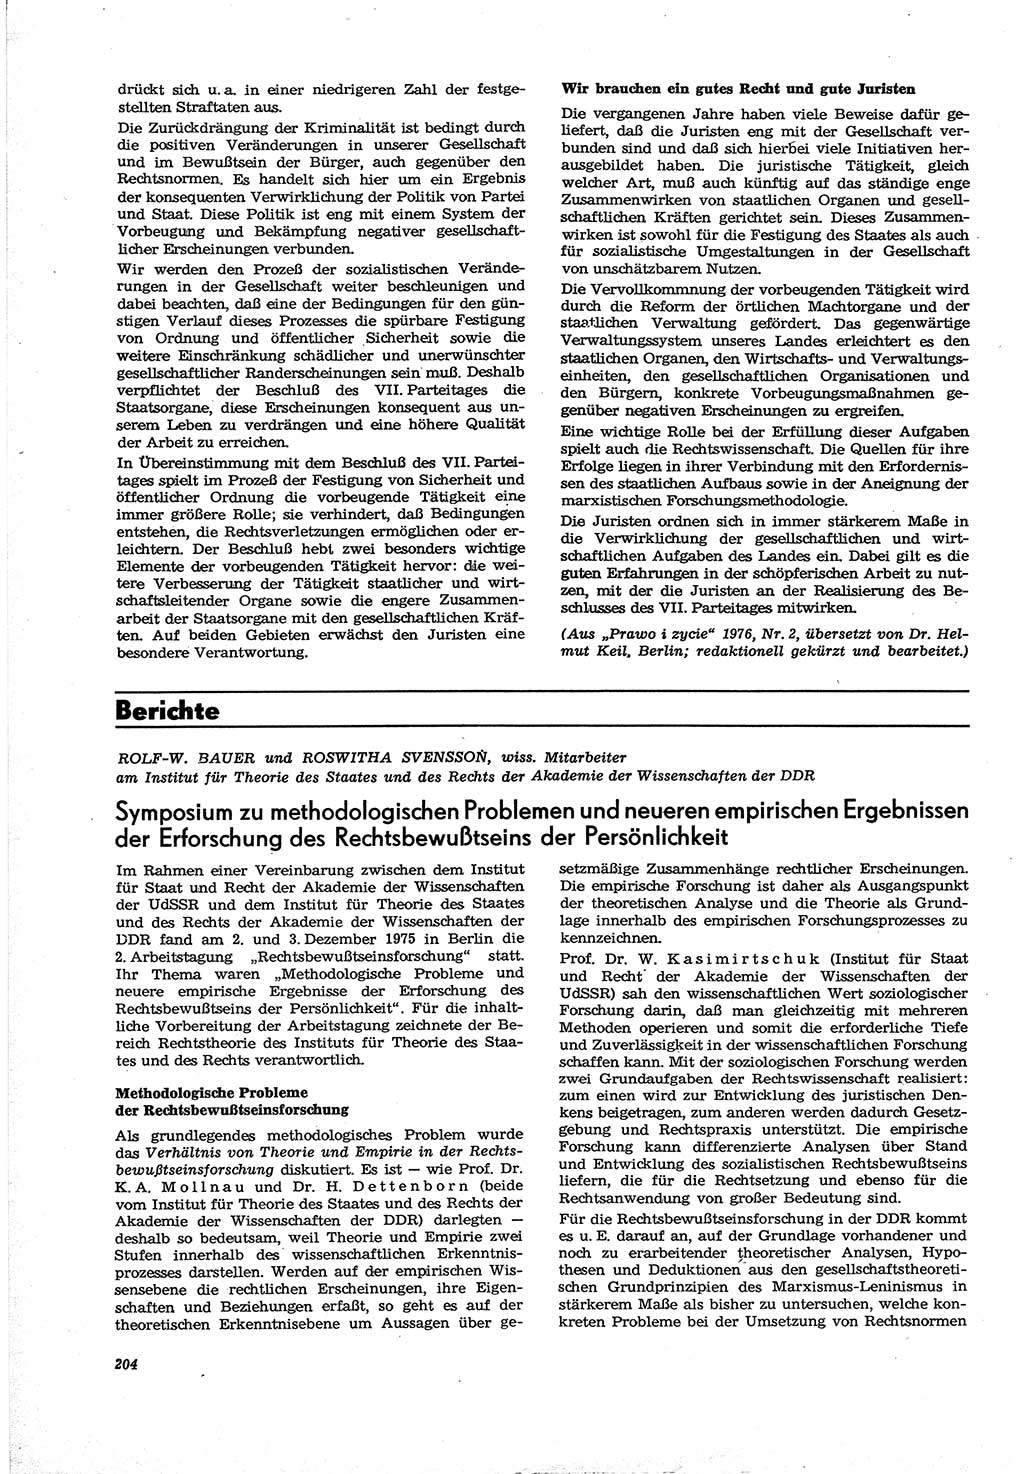 Neue Justiz (NJ), Zeitschrift für Recht und Rechtswissenschaft [Deutsche Demokratische Republik (DDR)], 30. Jahrgang 1976, Seite 204 (NJ DDR 1976, S. 204)